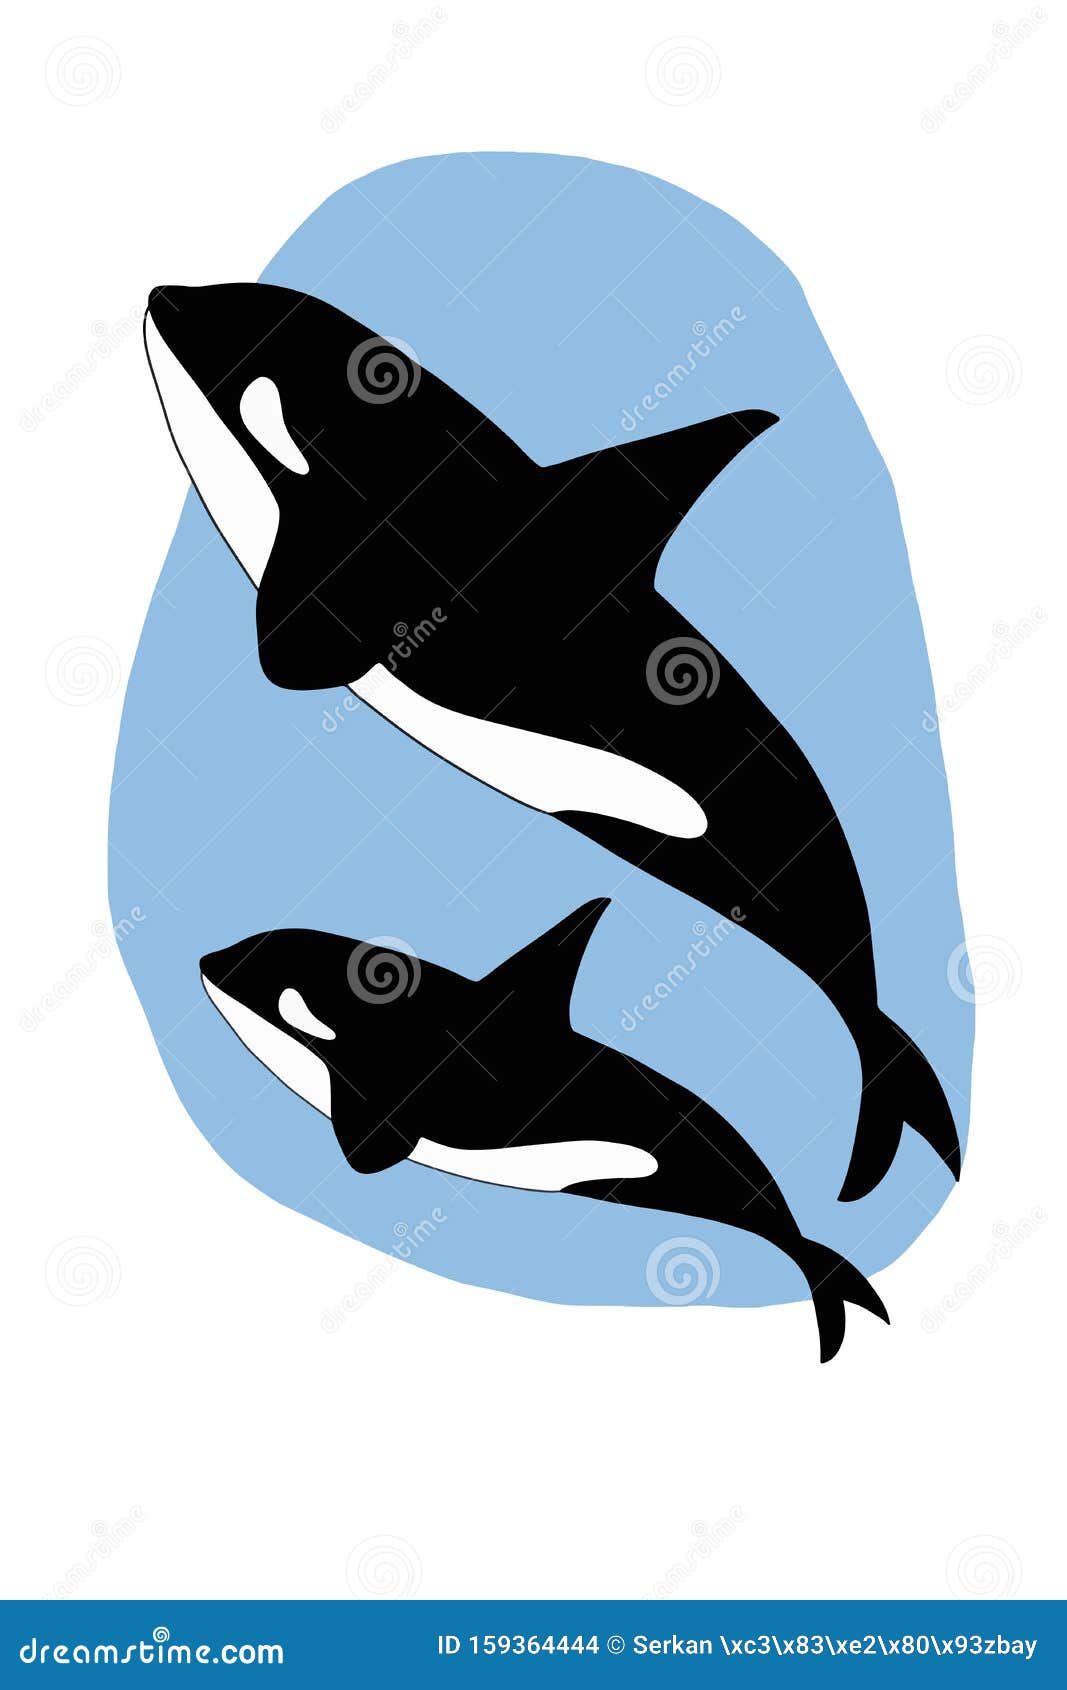 Personajes De Caricatura Dibujando Ilustraciones De Orcas Asesinas Stock de  ilustración - Ilustración de caracteres, colorante: 159364444